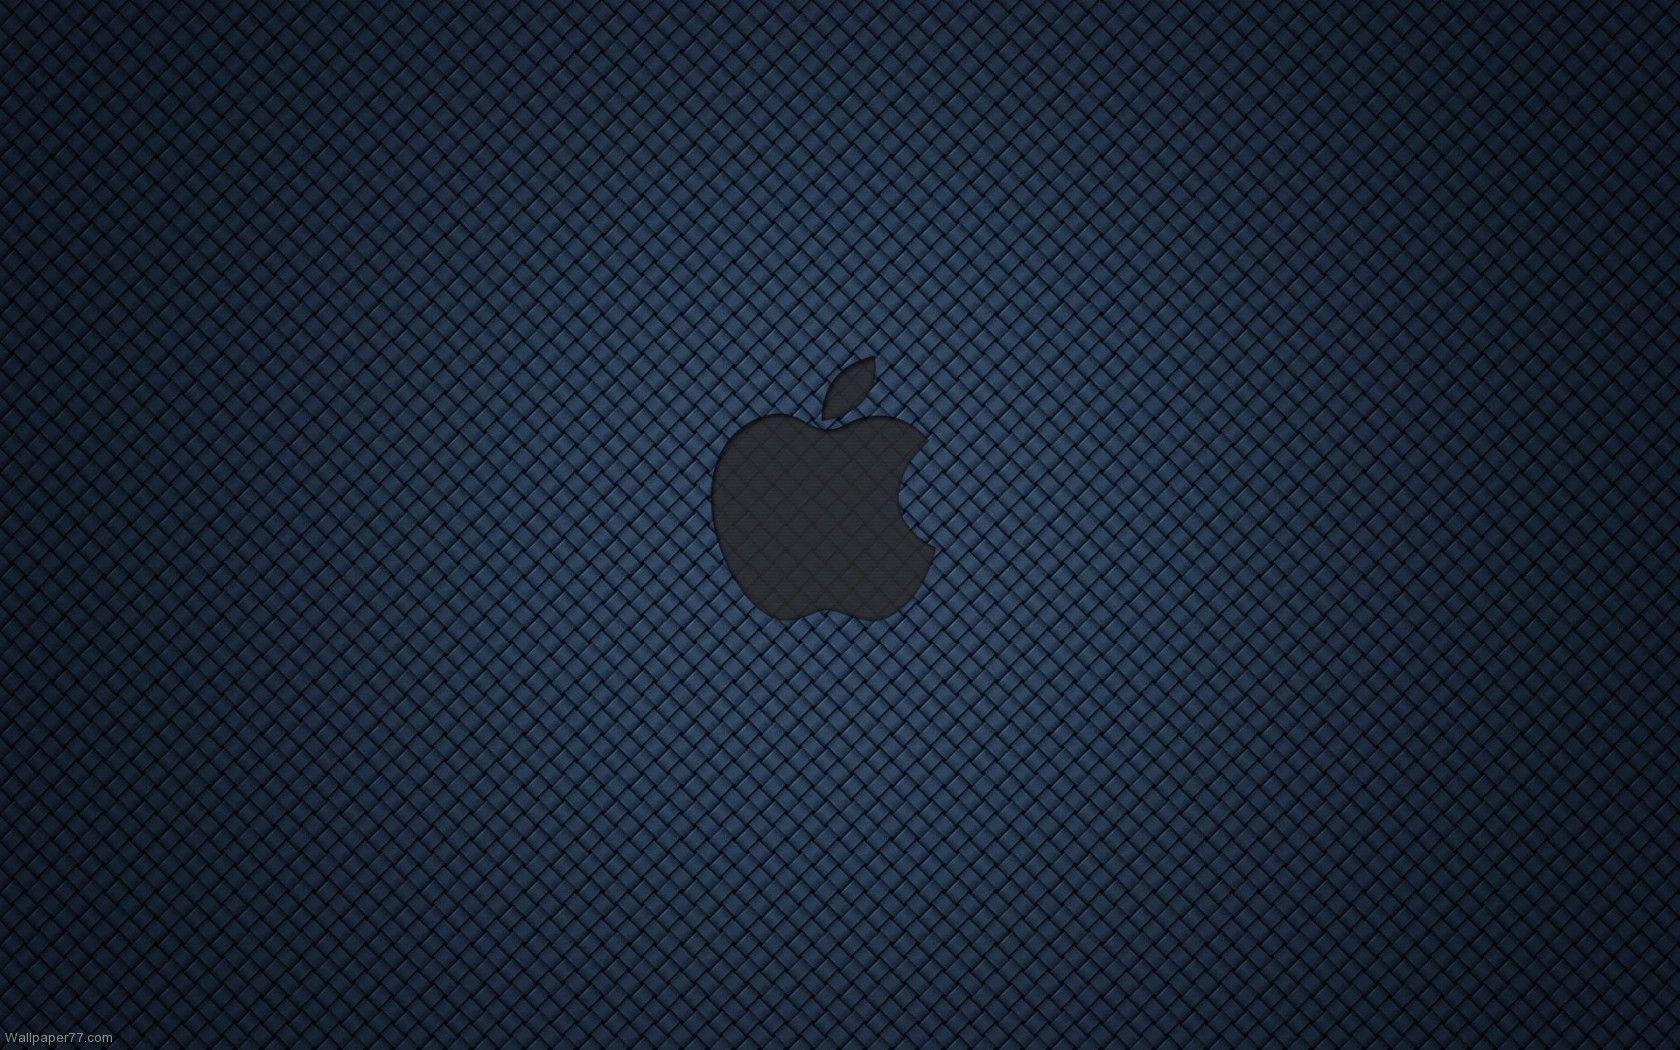 Apple Dark Blue, 1680x1050 pixels, Wallpaper tagged Apple